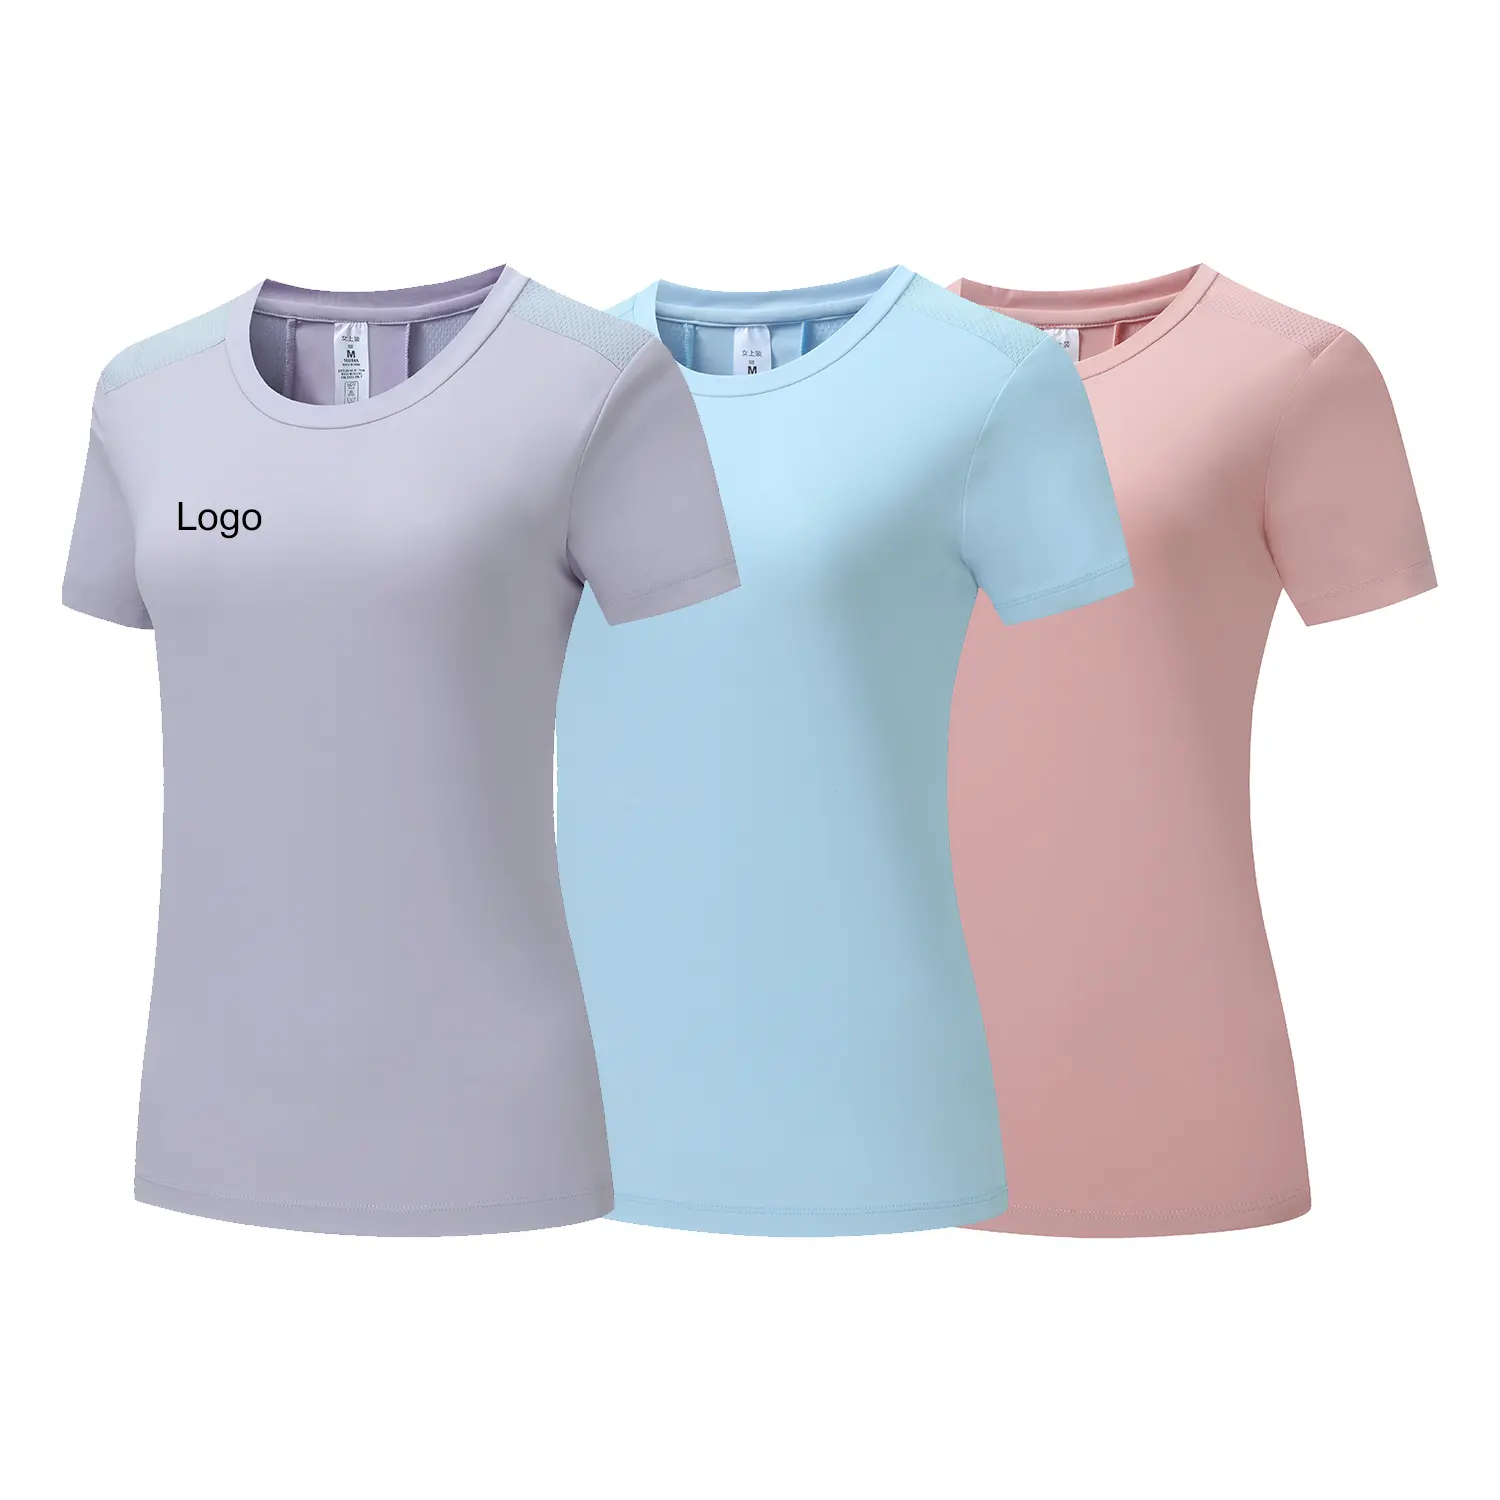 Kleidung Hose Laufen Mann Sommer Laufen T-Shirt neue Designs Polyester Mesh Gym Frauen Sport Home Gym Set